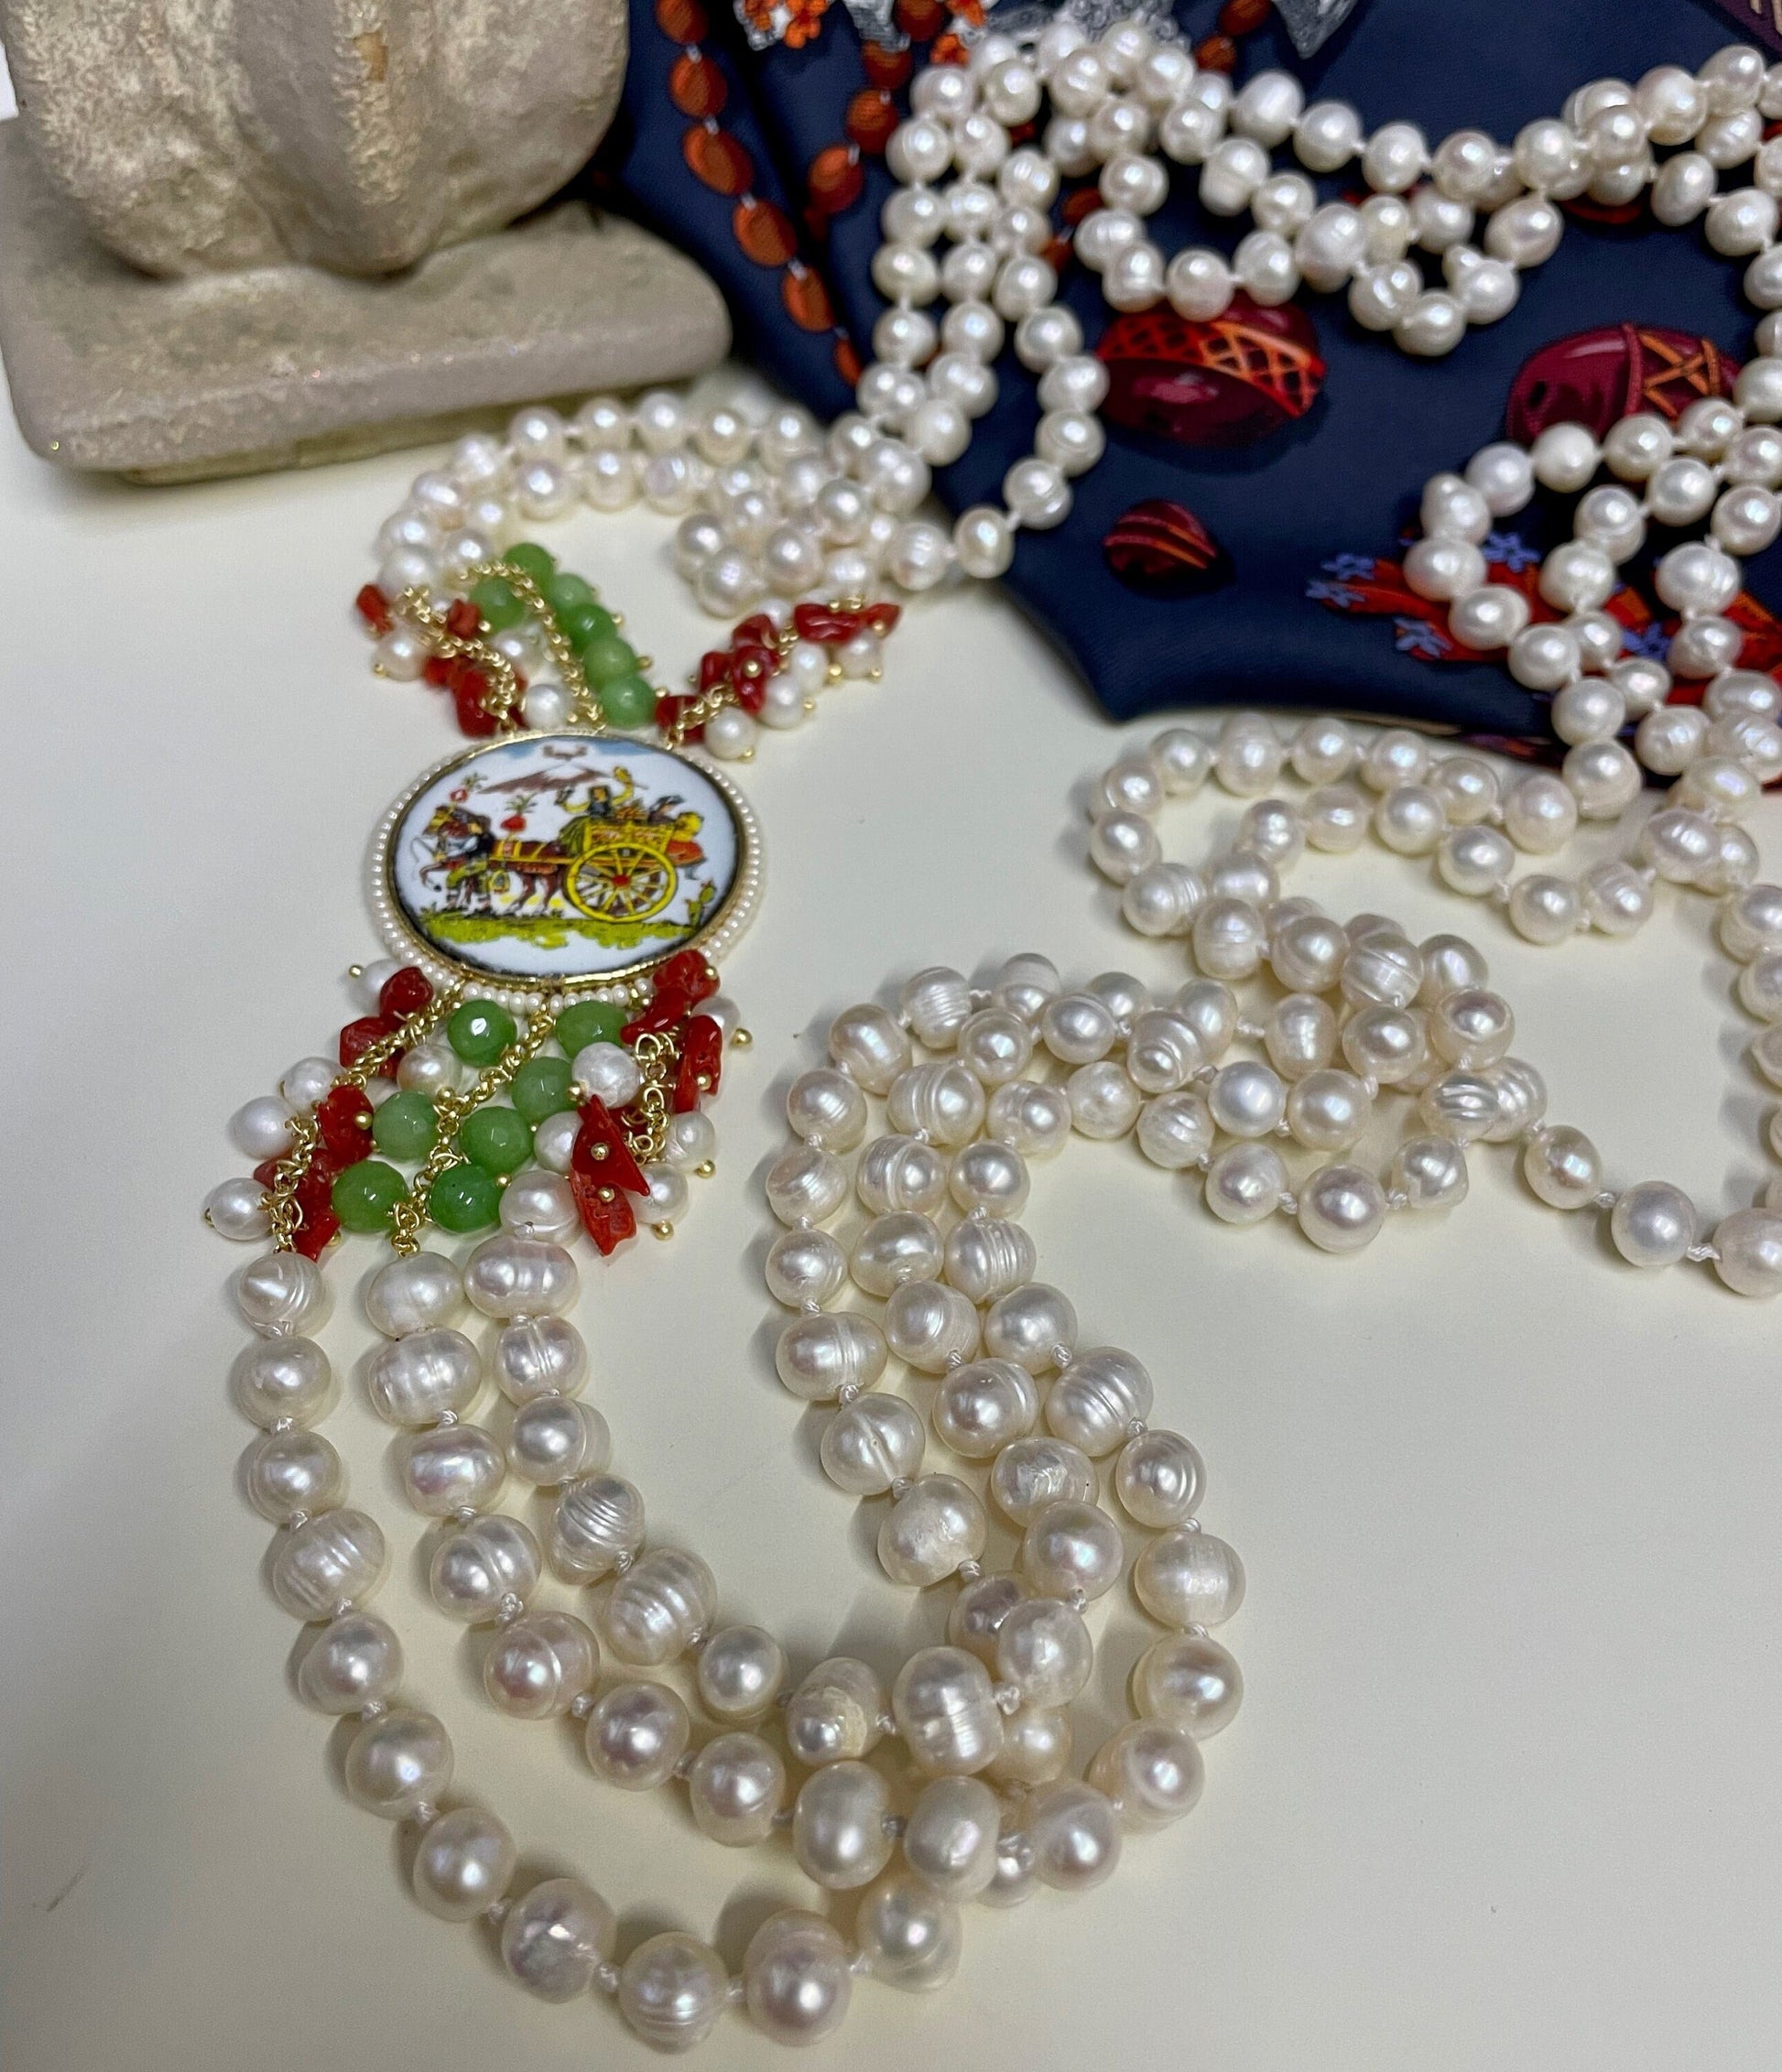 Collana siciliana con 3 fili di perle di fiume, mattonella tonda ceramica di caltagirone, coralli e agata verde.)